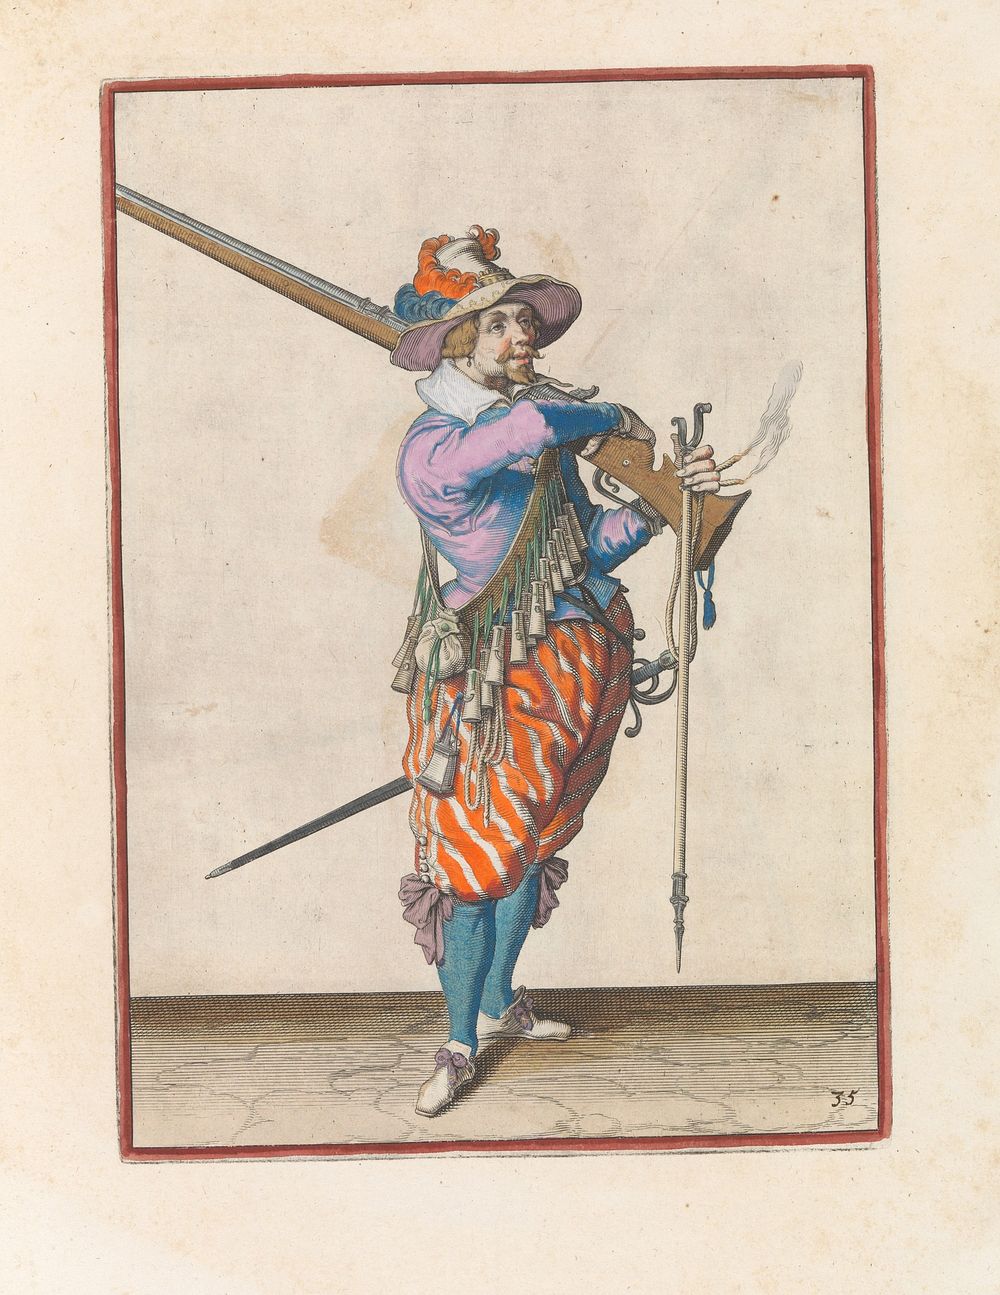 Soldaat op wacht die zijn musket van zijn schouder neemt (c. 1597 - 1607) by Jacques de Gheyn II and Jacques de Gheyn II